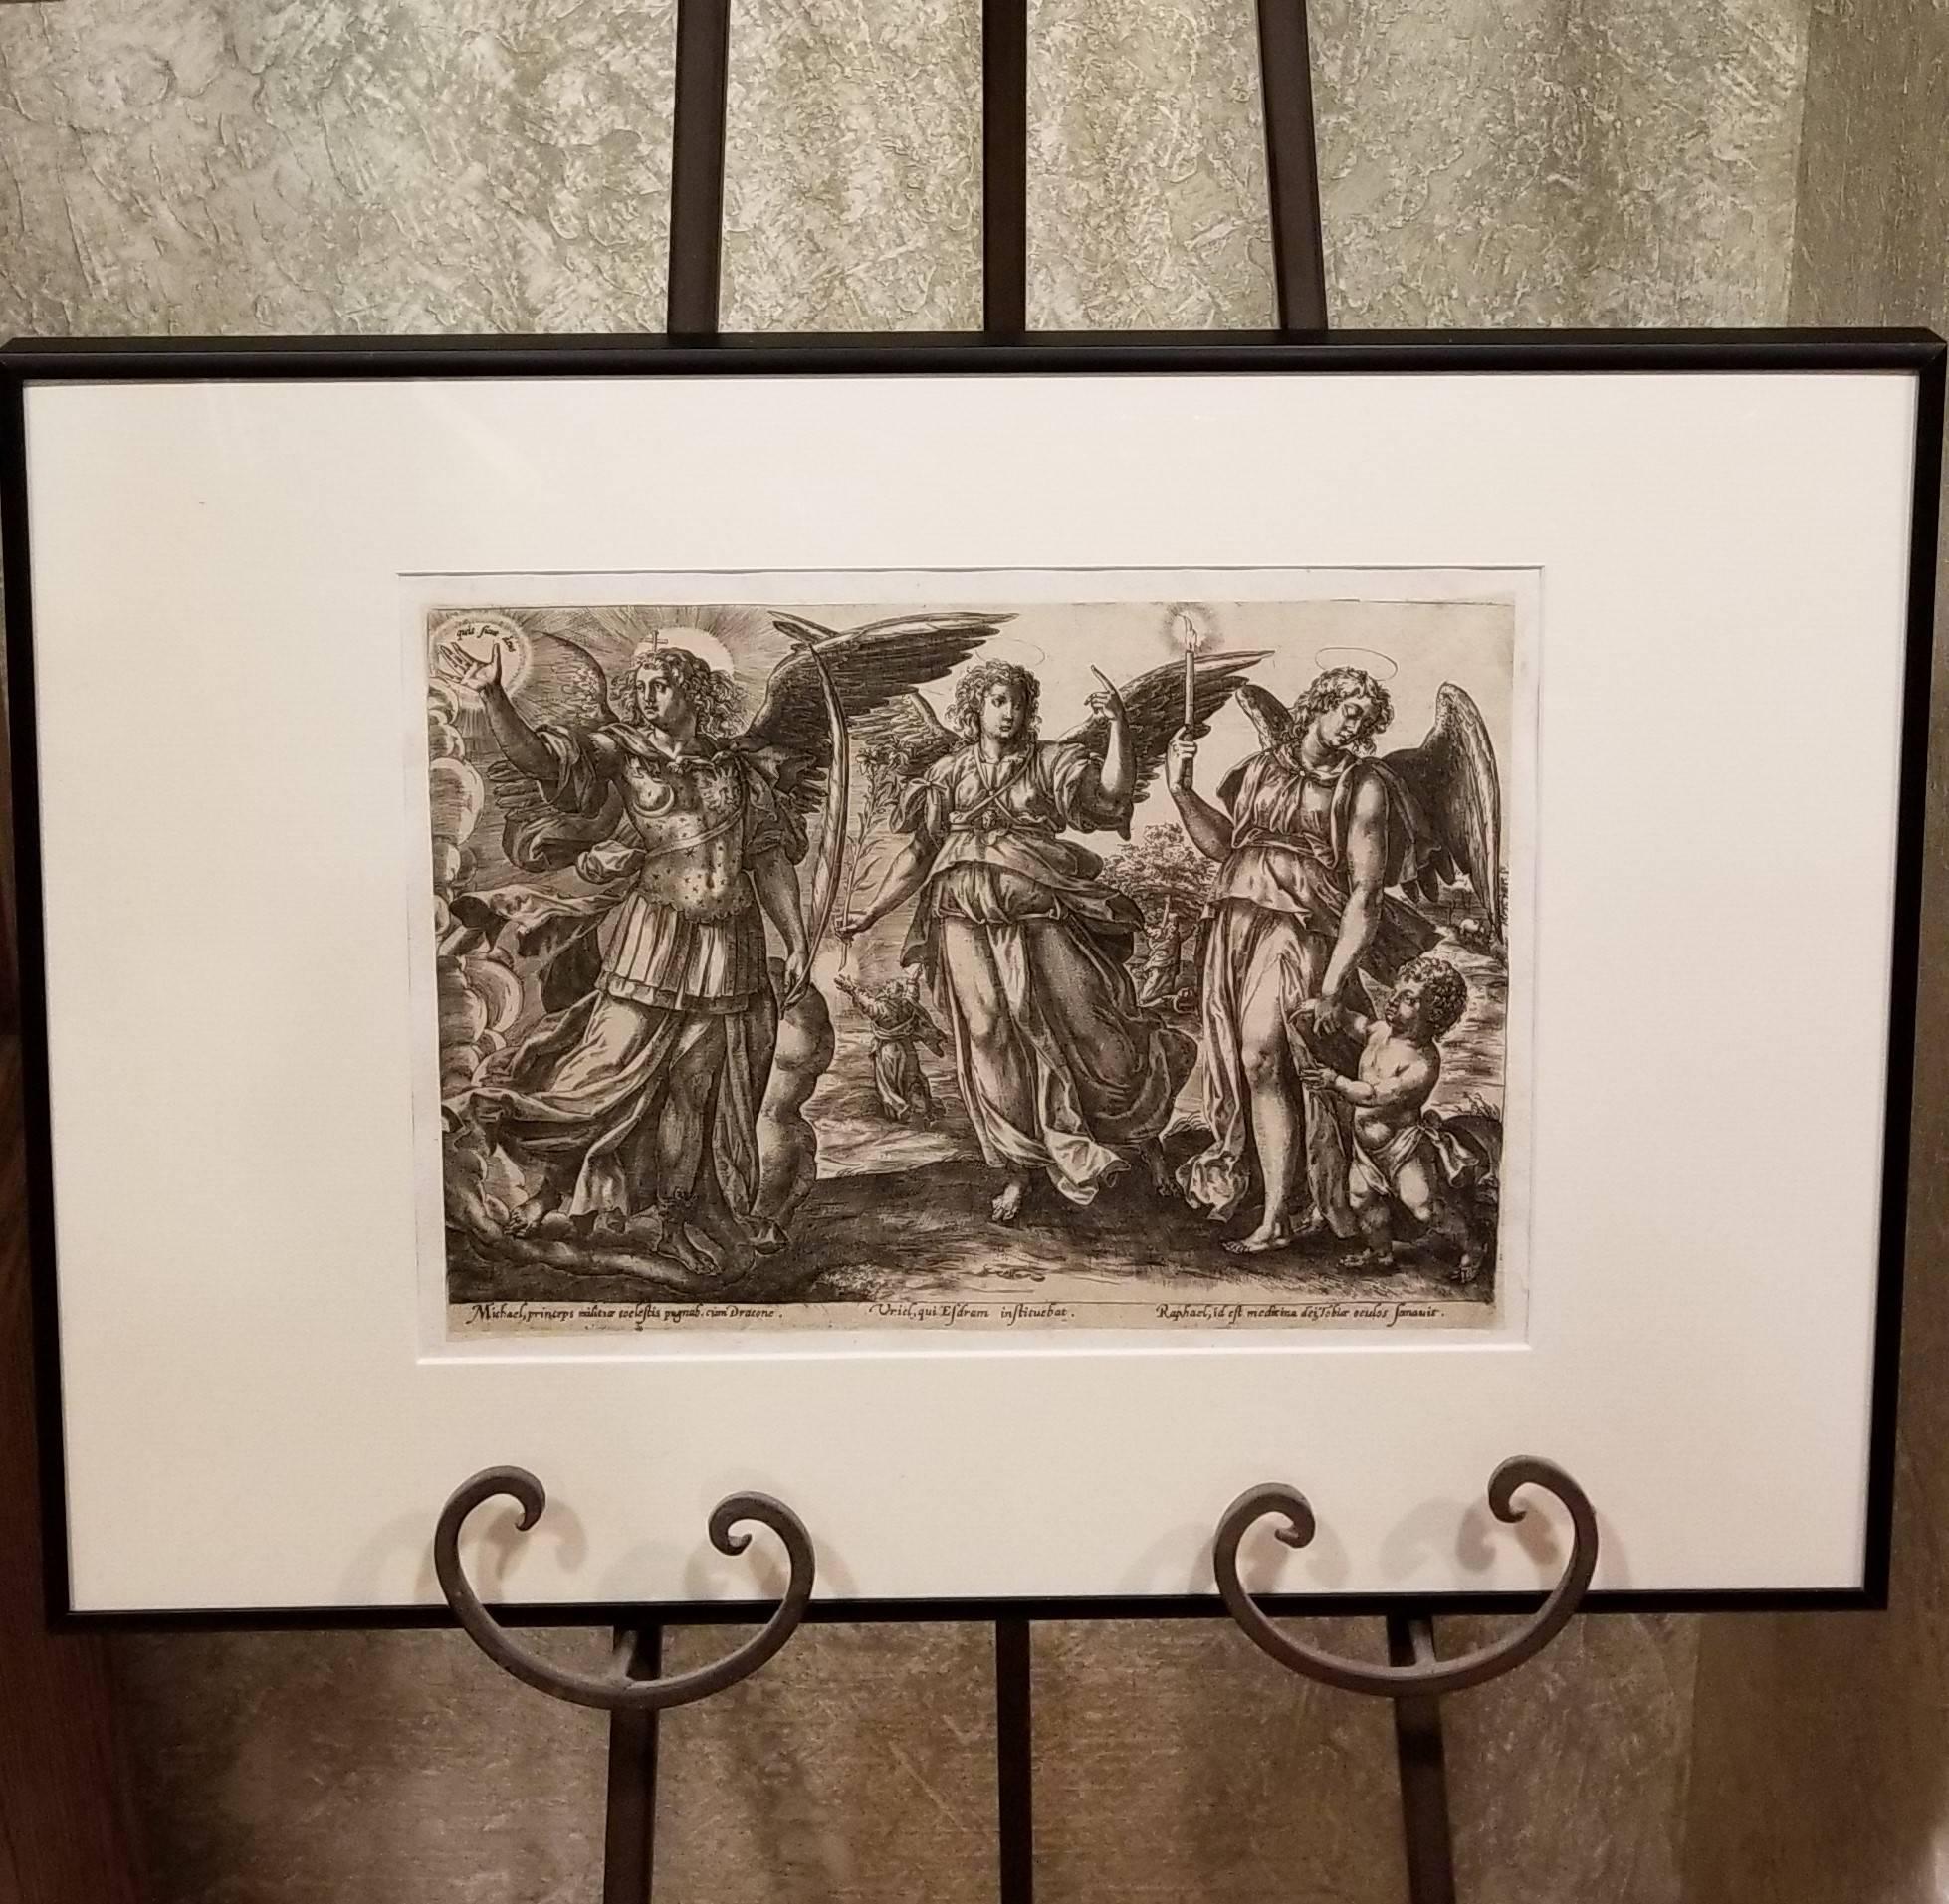 Angels - Framed Set of 2 Engravings - Old Master Engraving after Maerten de Vos 2